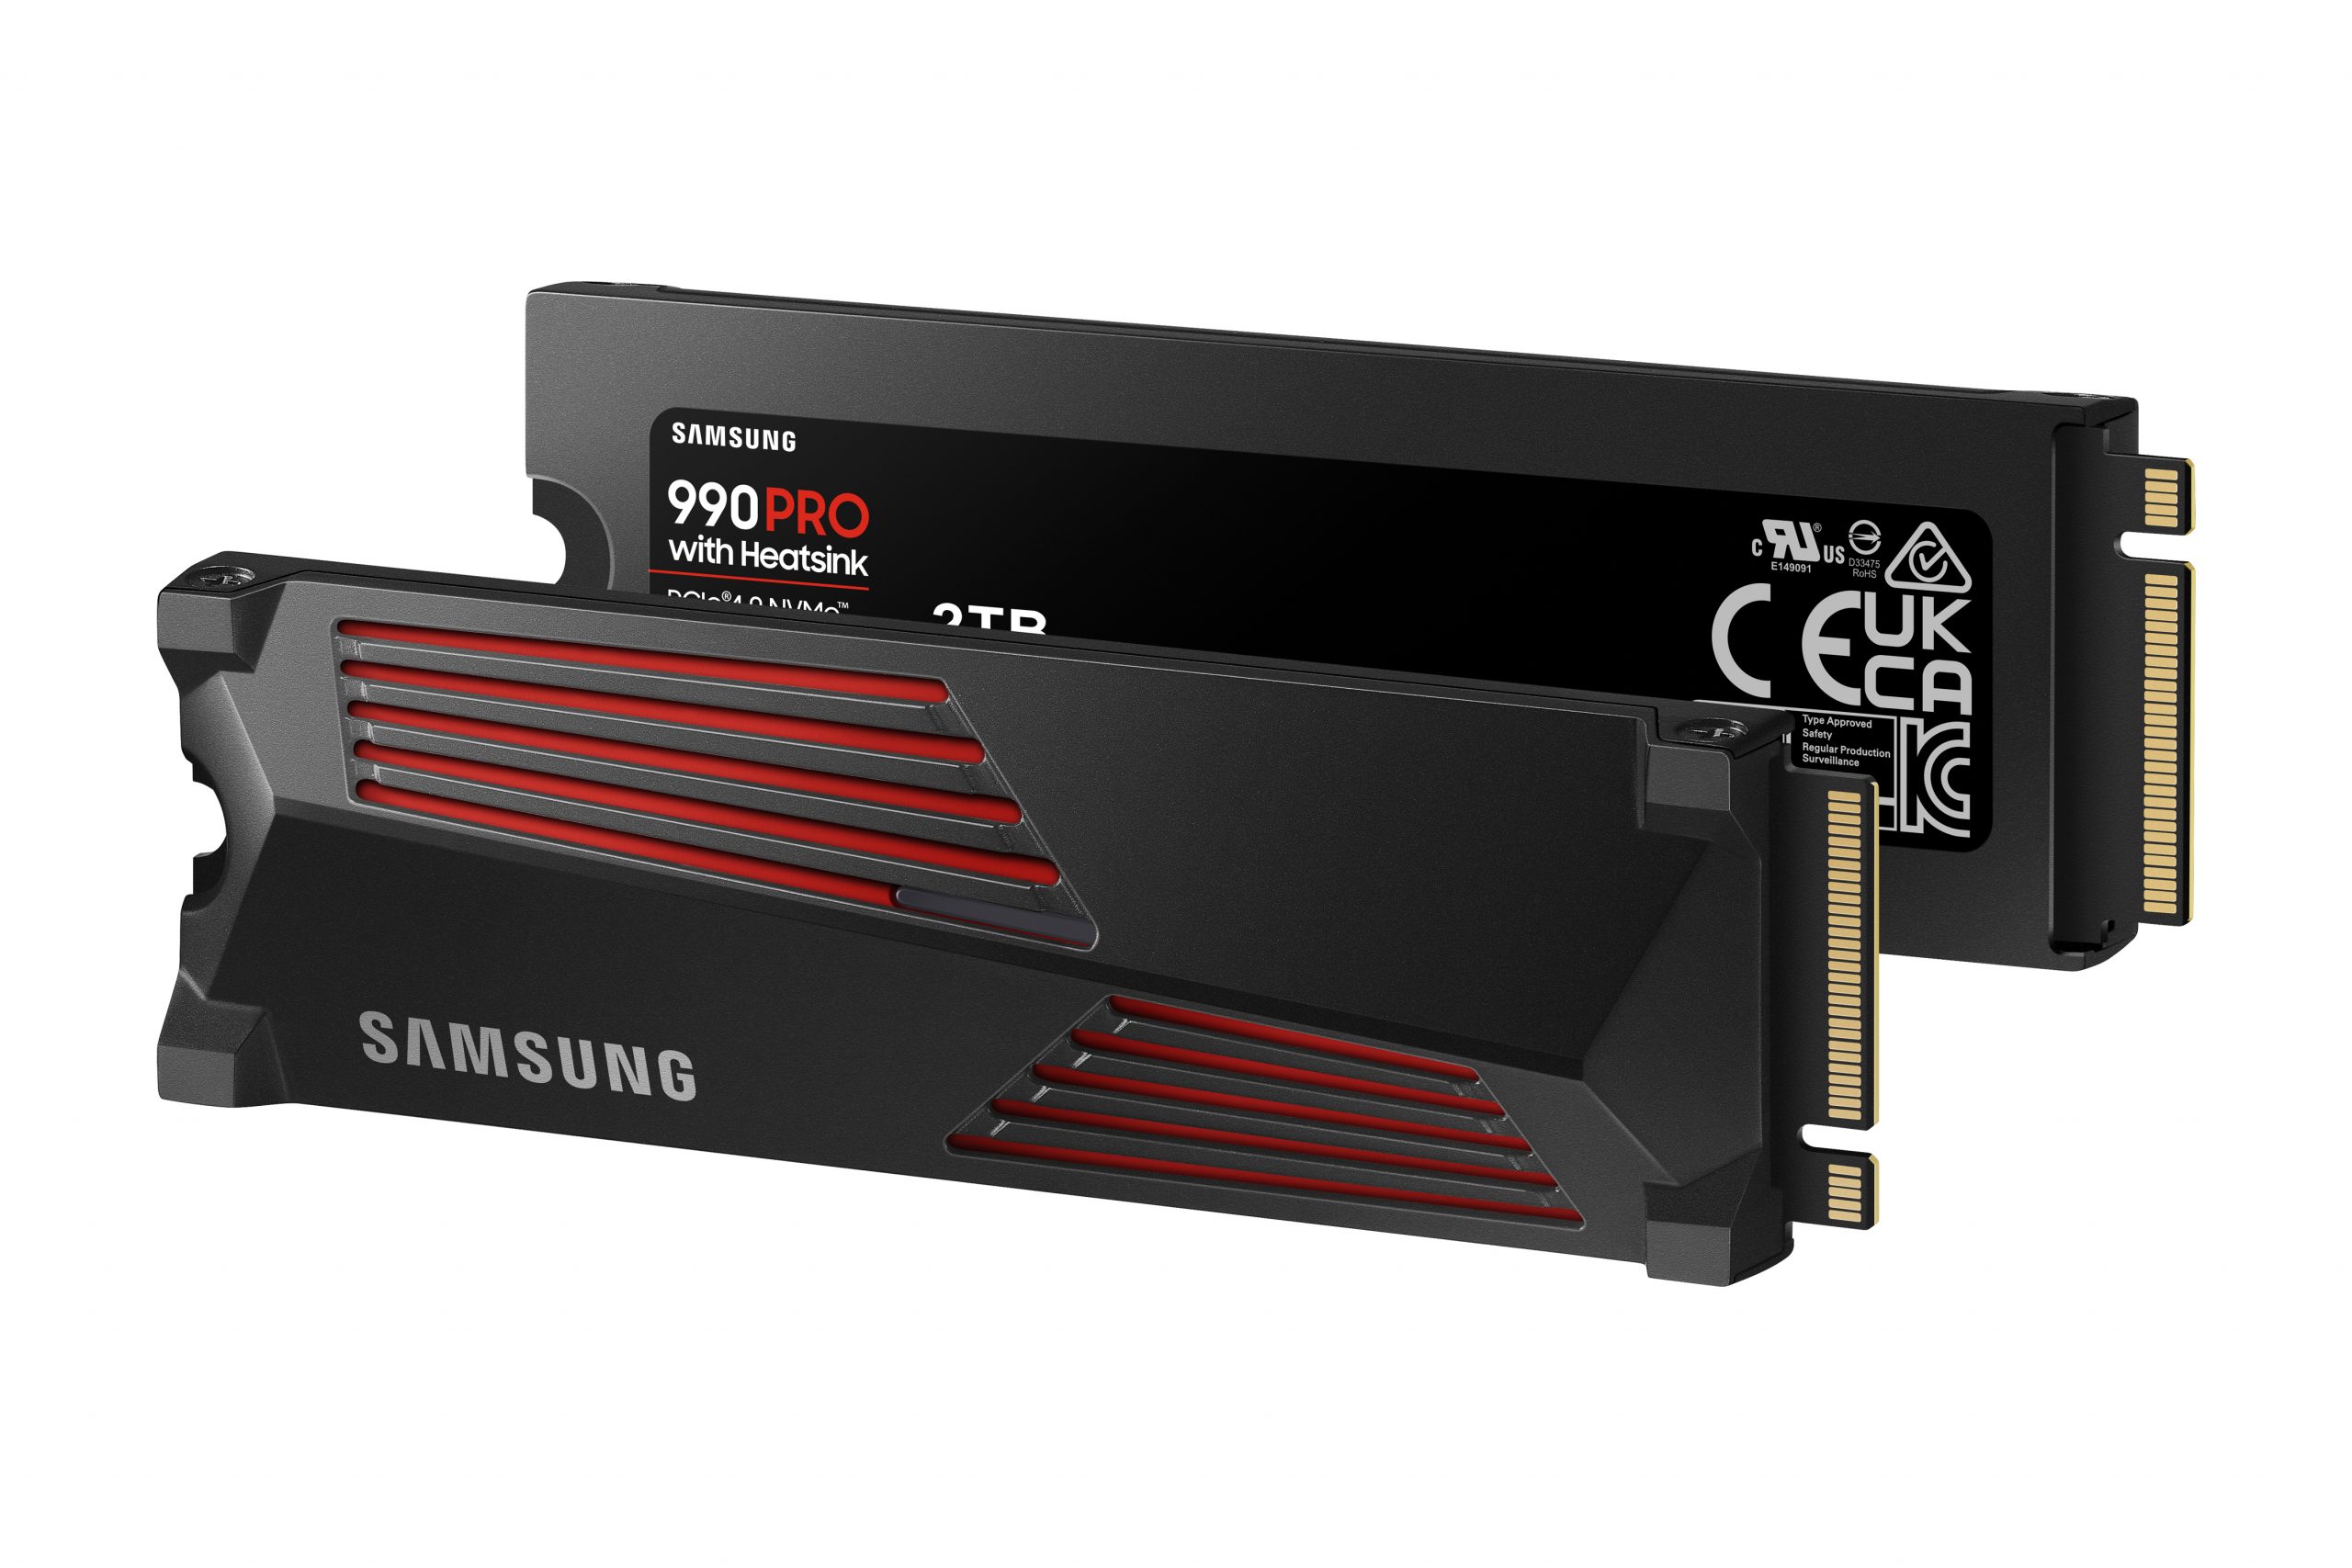 Nouveau firmware pour le SSD 990 PRO : la fin du cauchemar pour Samsung ?